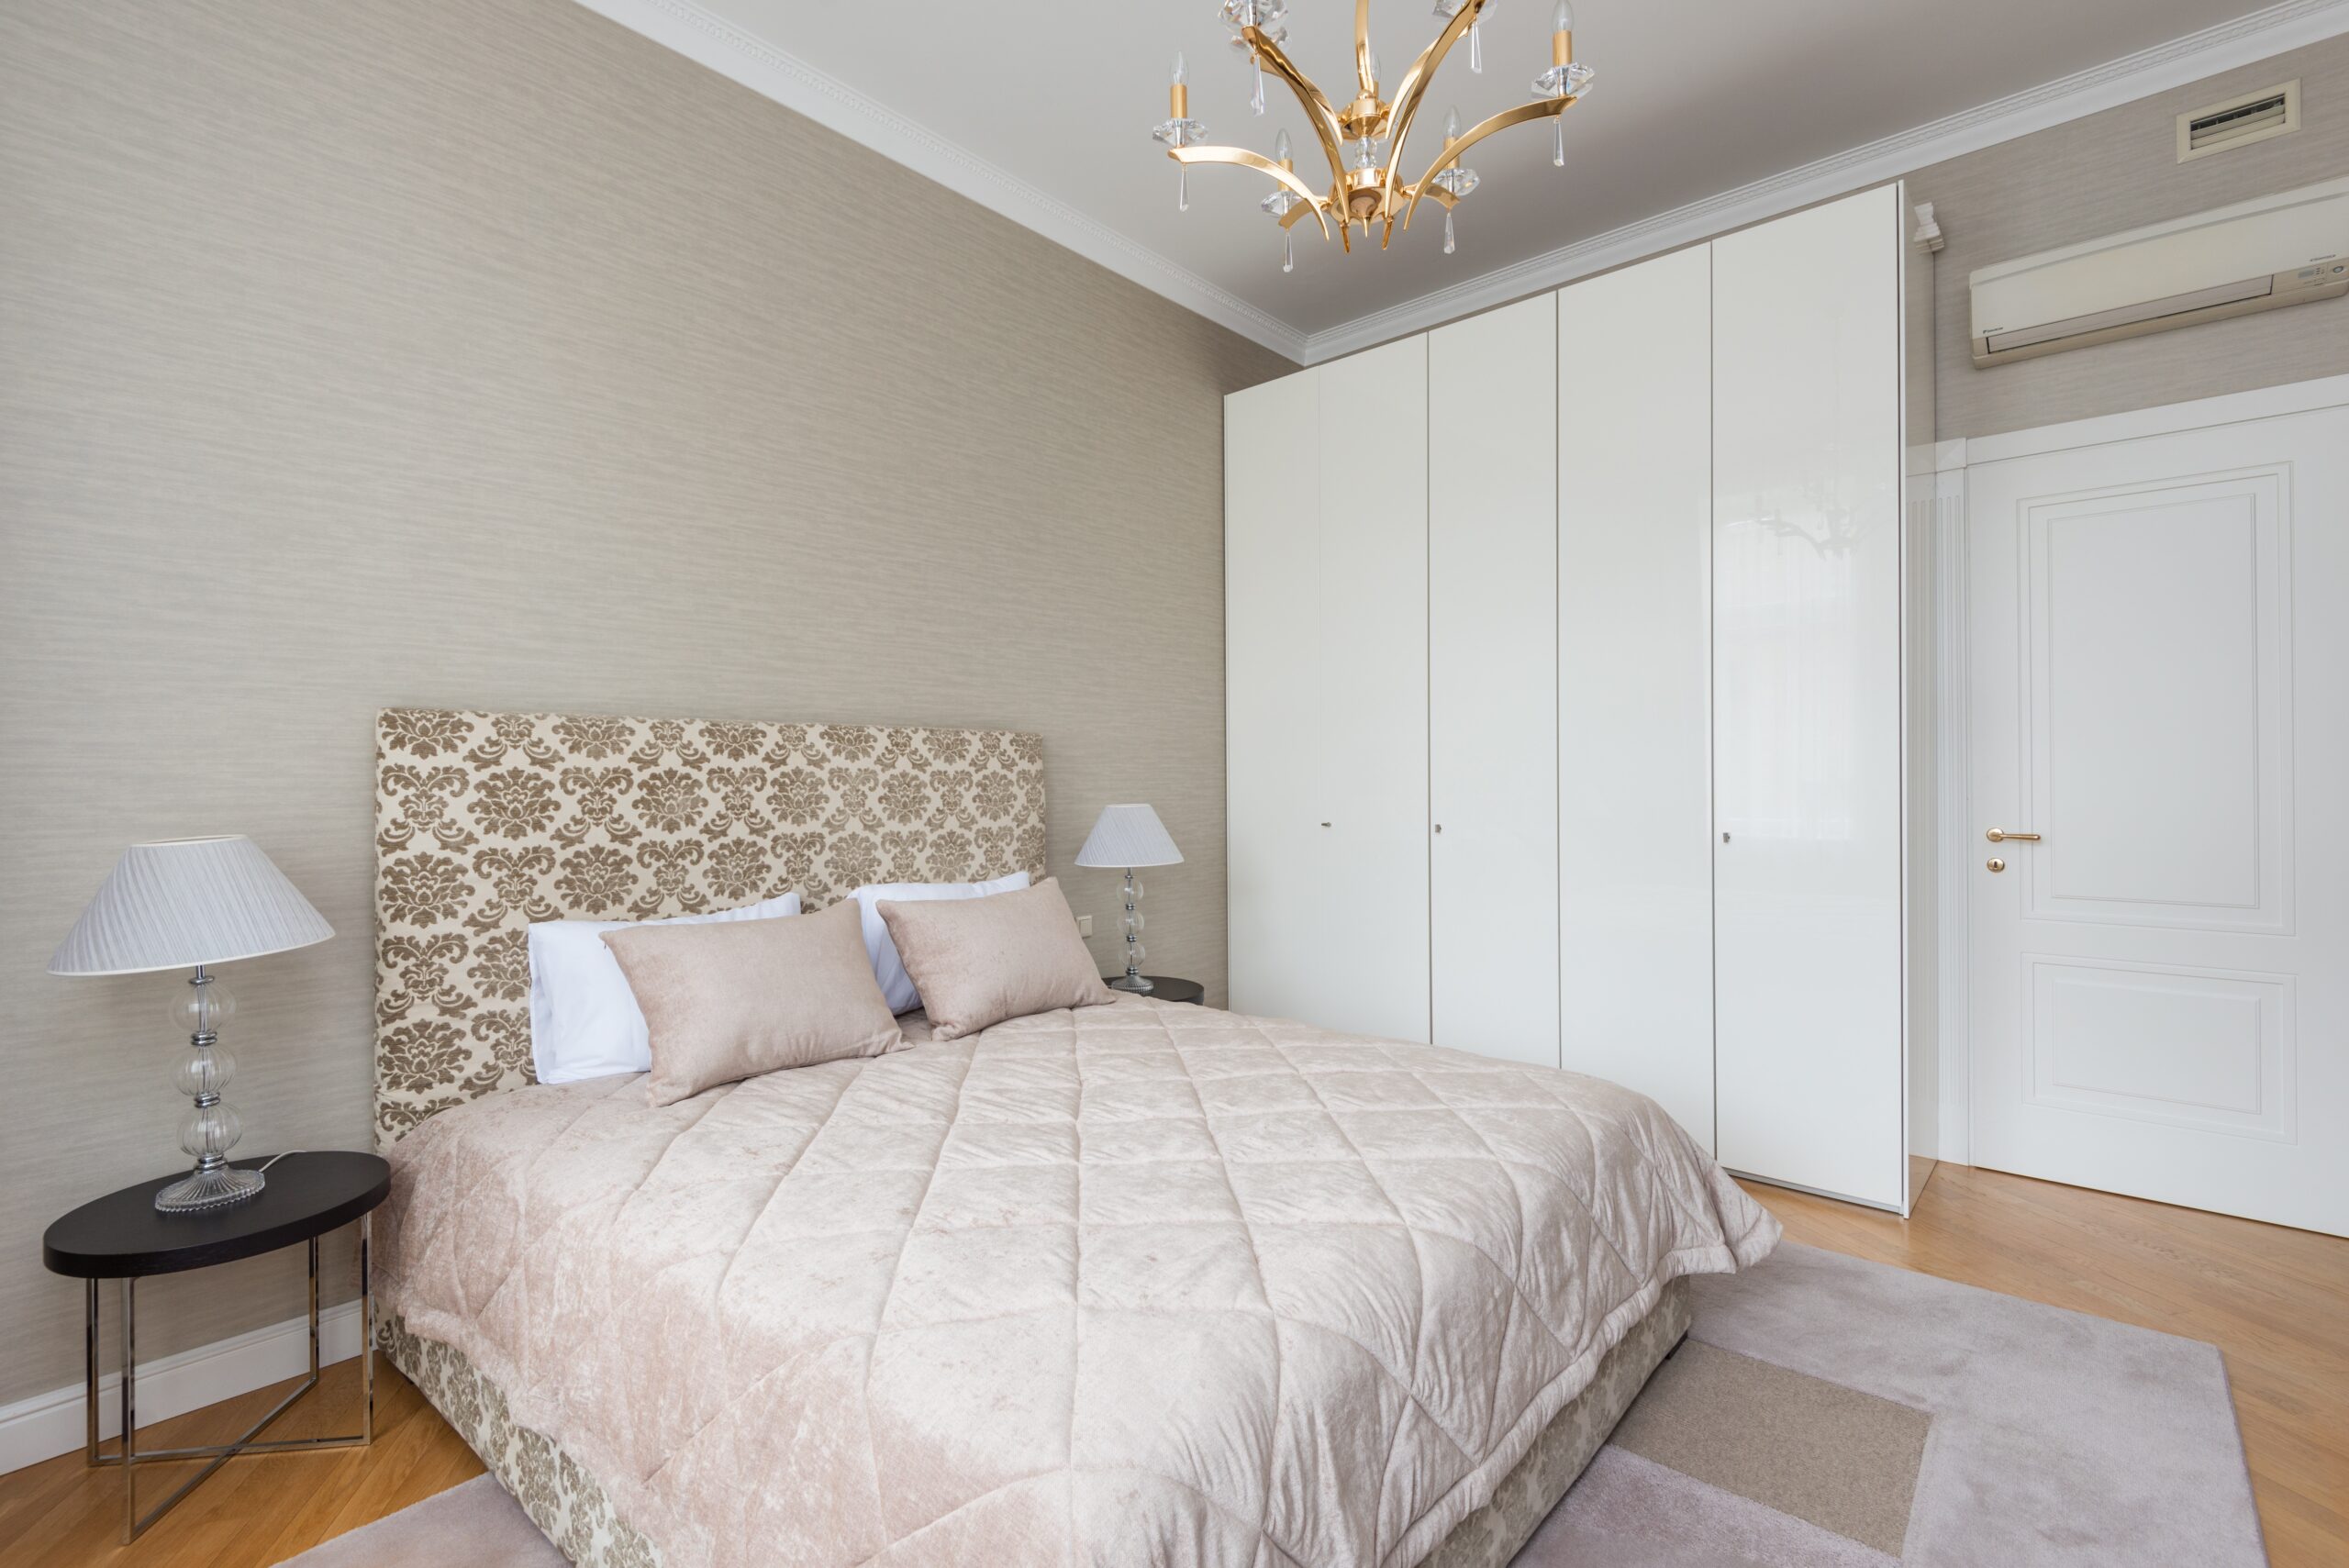 Bilden visar ett sovrum med garderober. Garderob Stockholm är ett populärt garderobsalternativ till sovrummet.